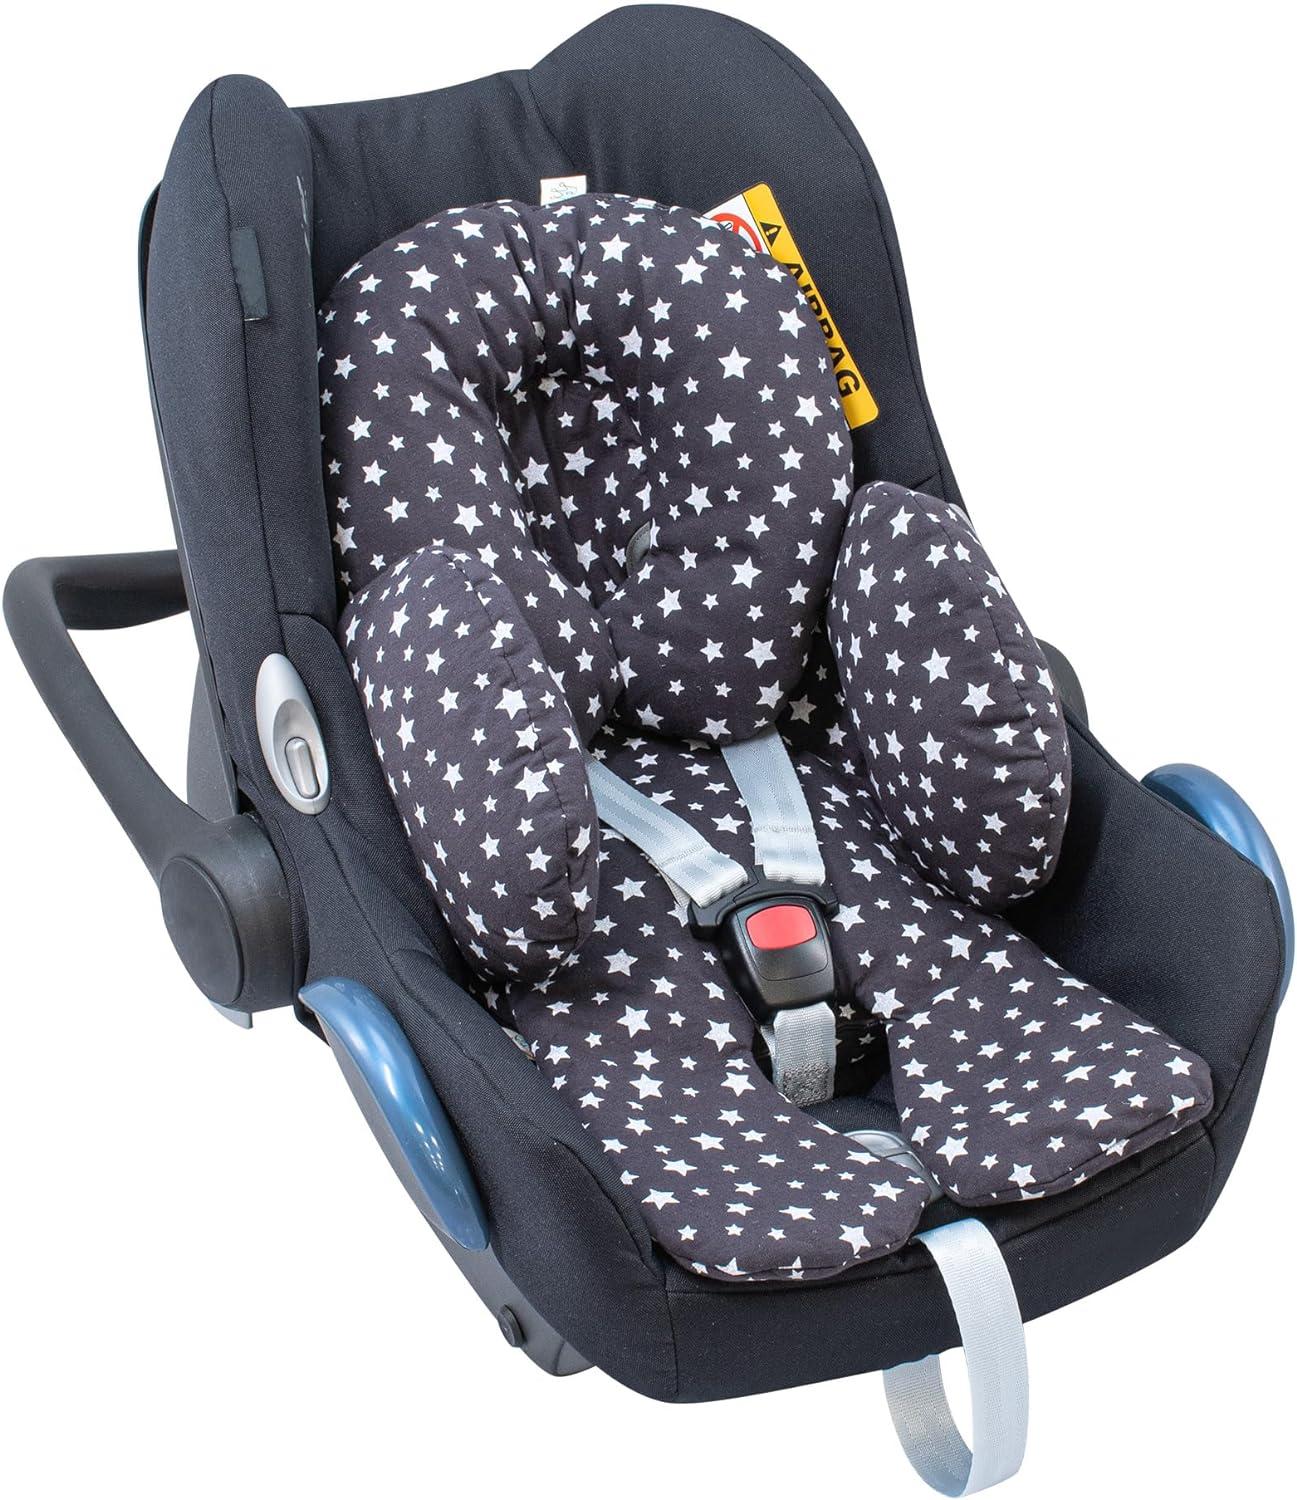 Universal mat for baby car seat - Jyoko